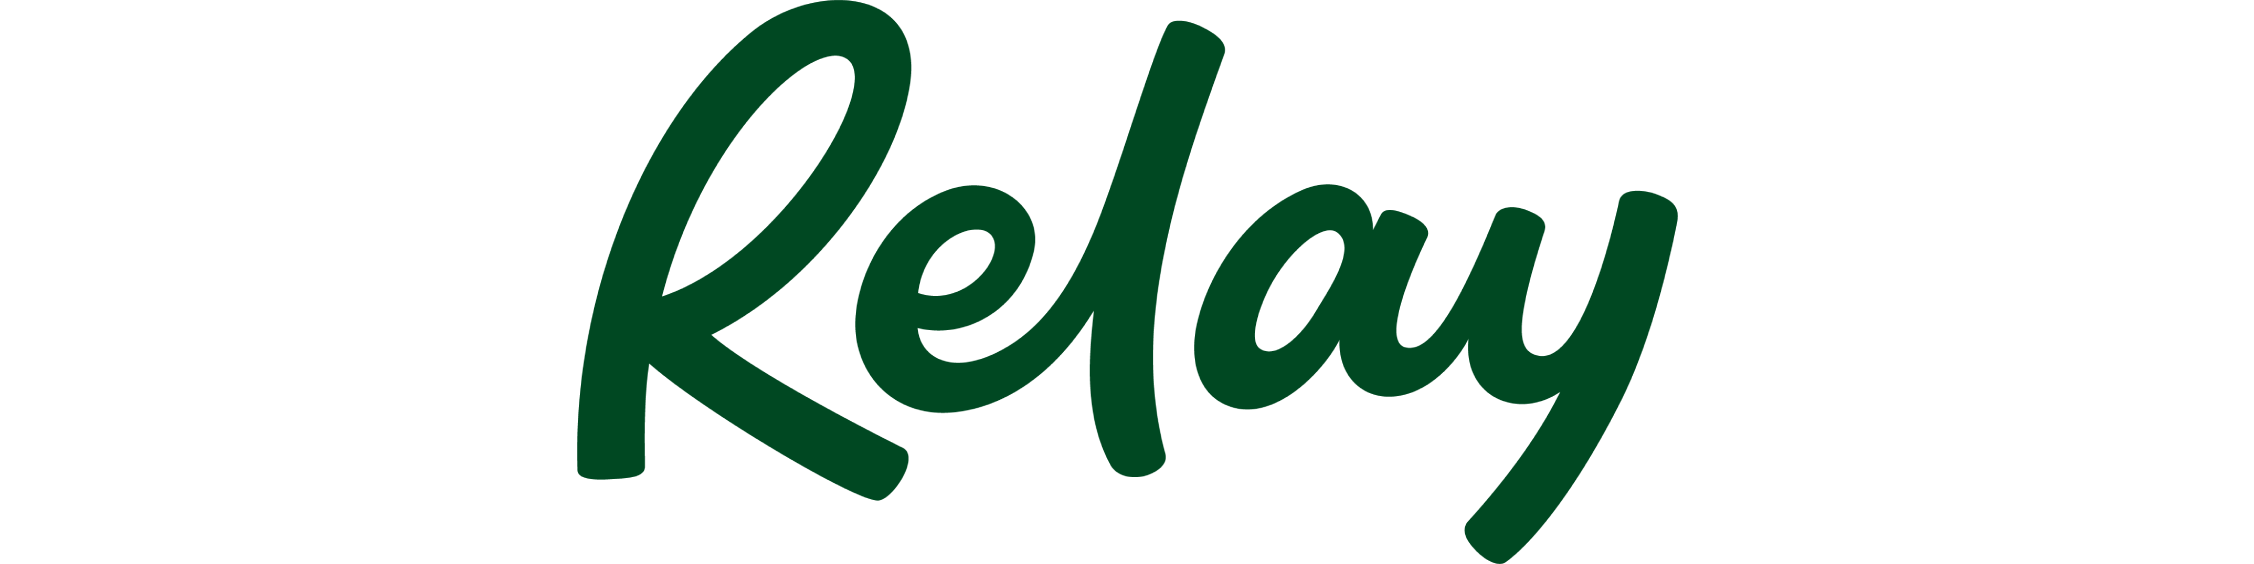 nearside logo